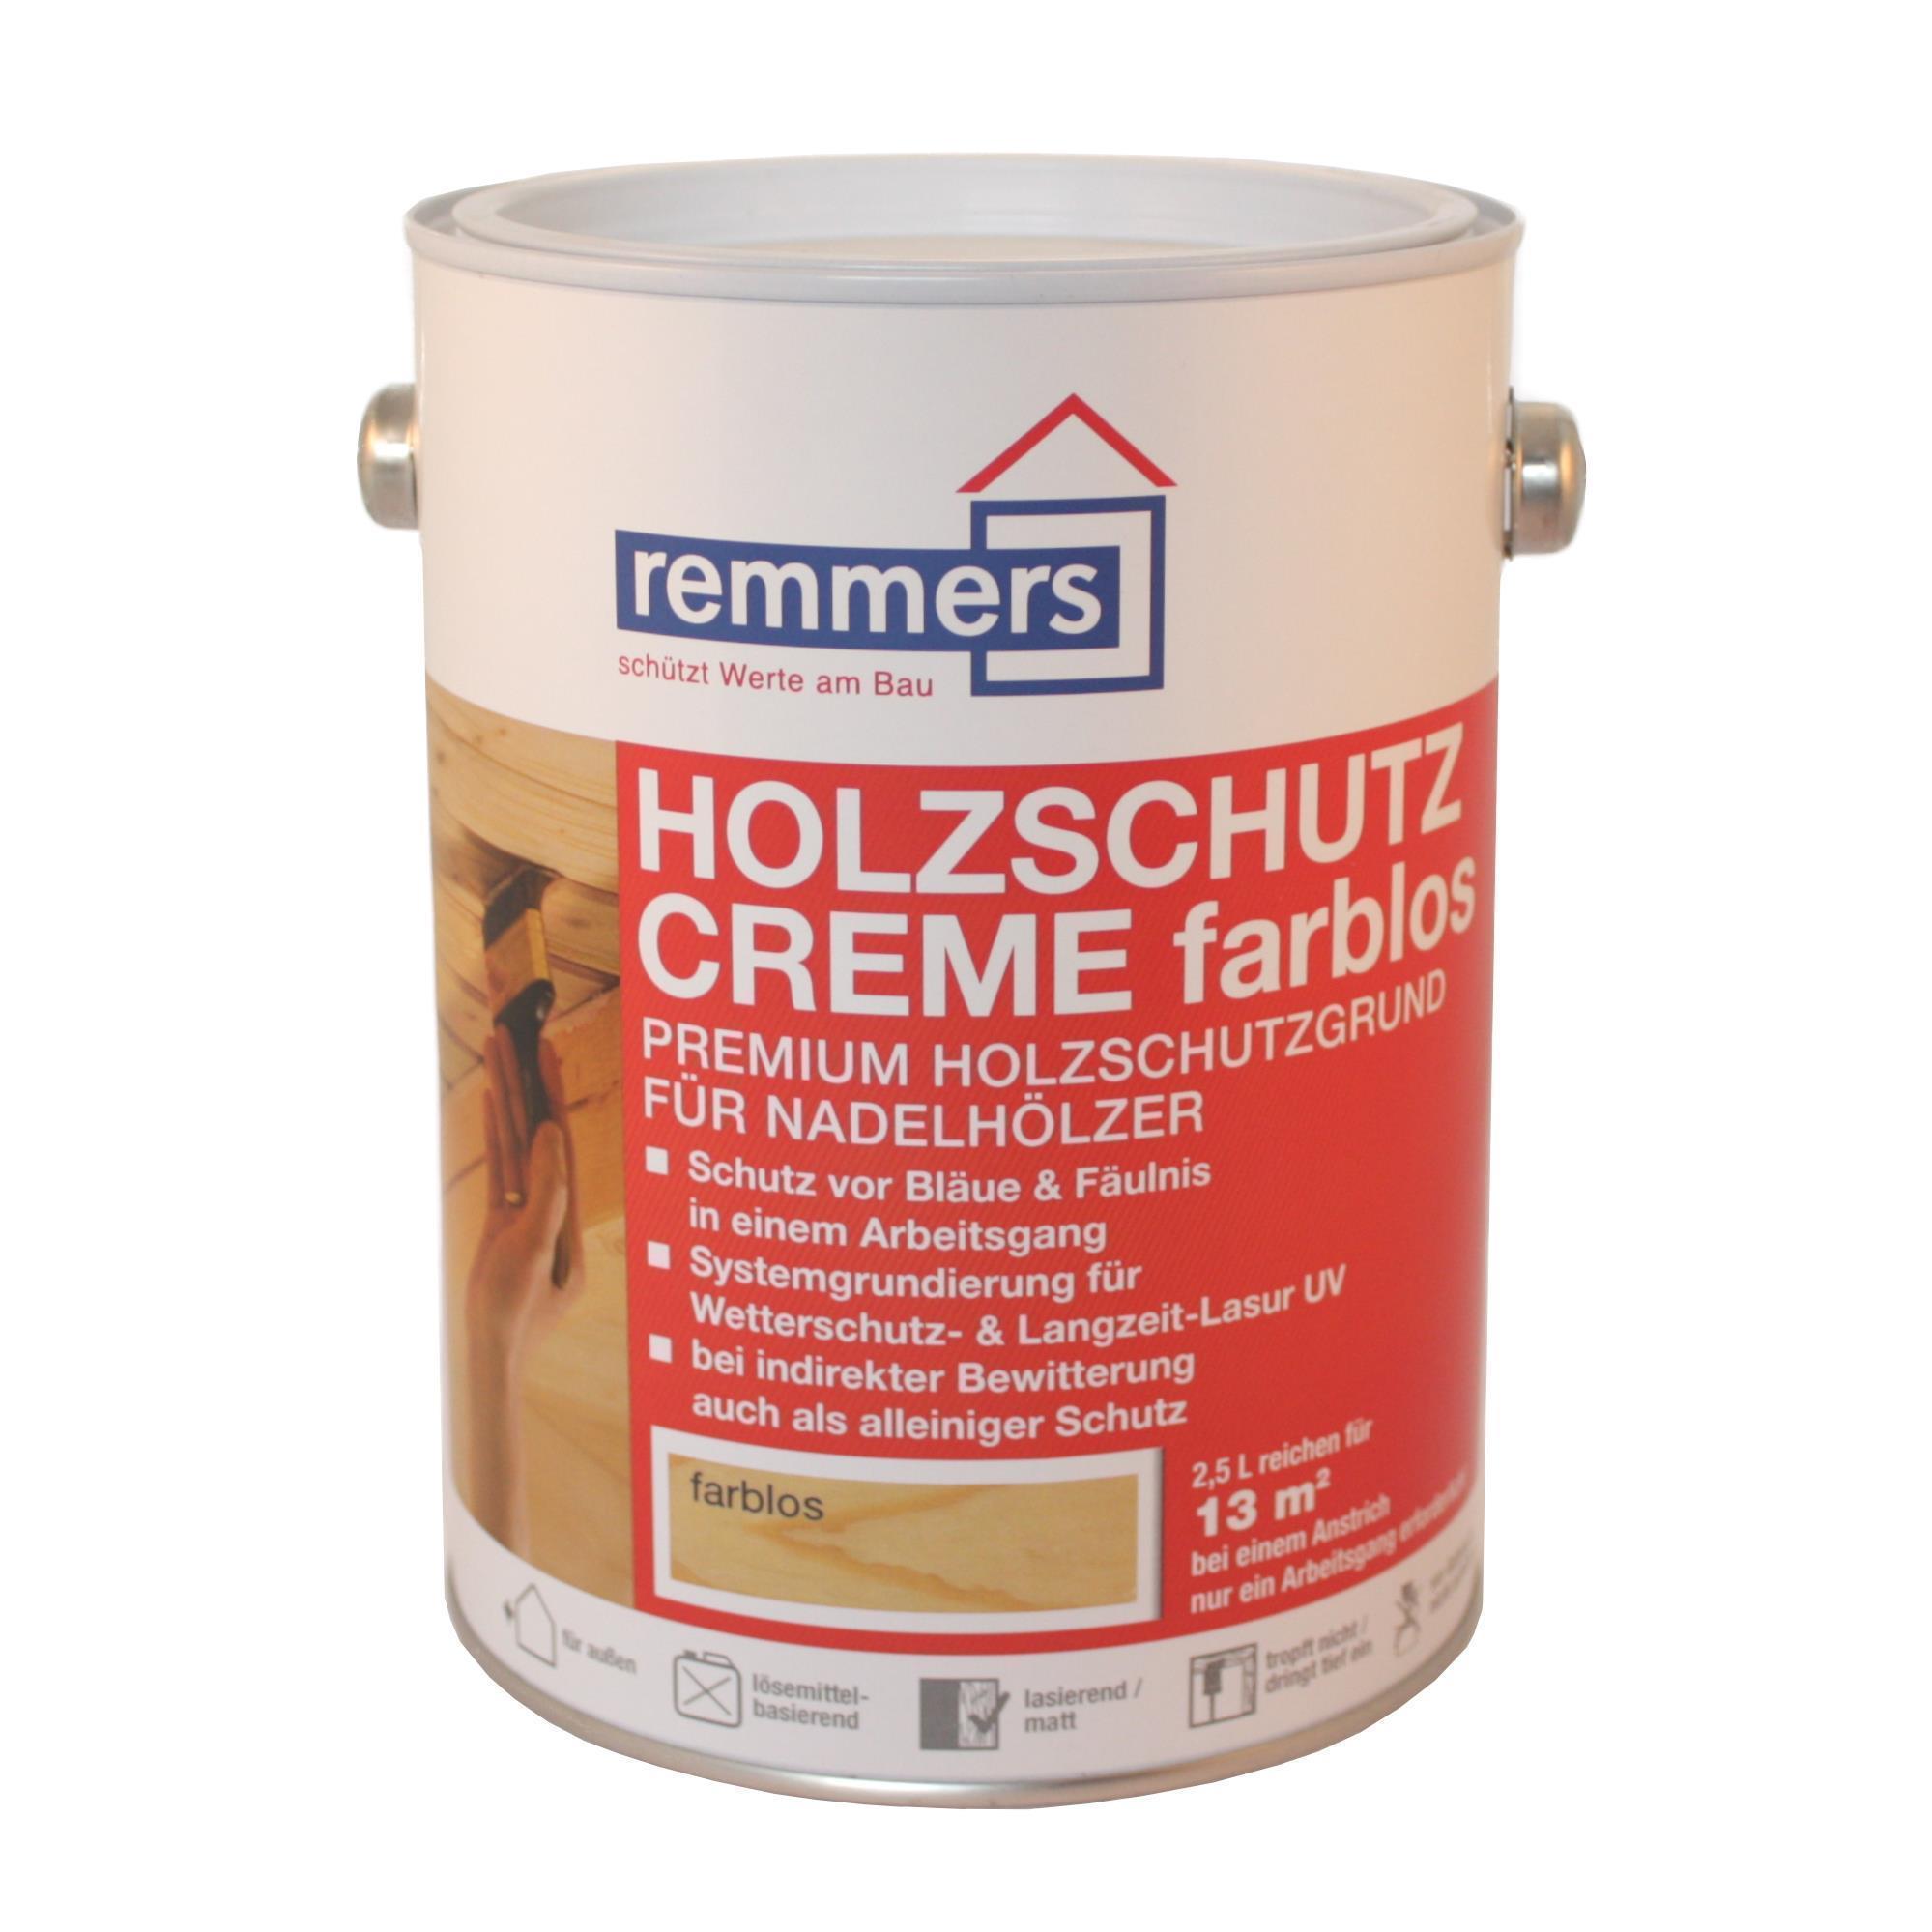 Remmers Holzschutz-Creme 2,5 l farblos